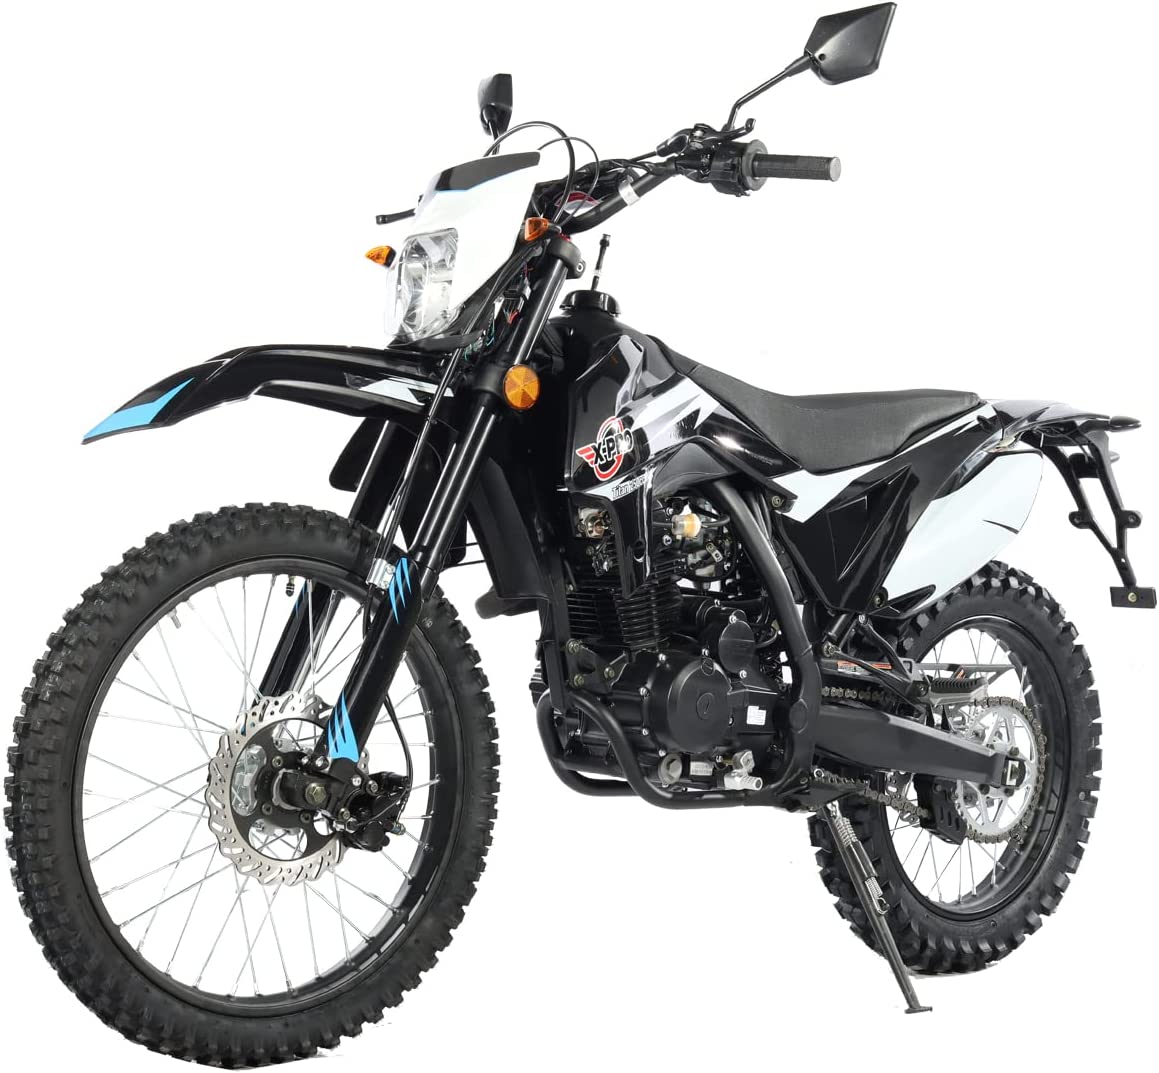 X-Pro Brand New Titan Dlx 250cc Dirt Bike, All Lights and 5 Manual Transmission, Electric/Kick Start